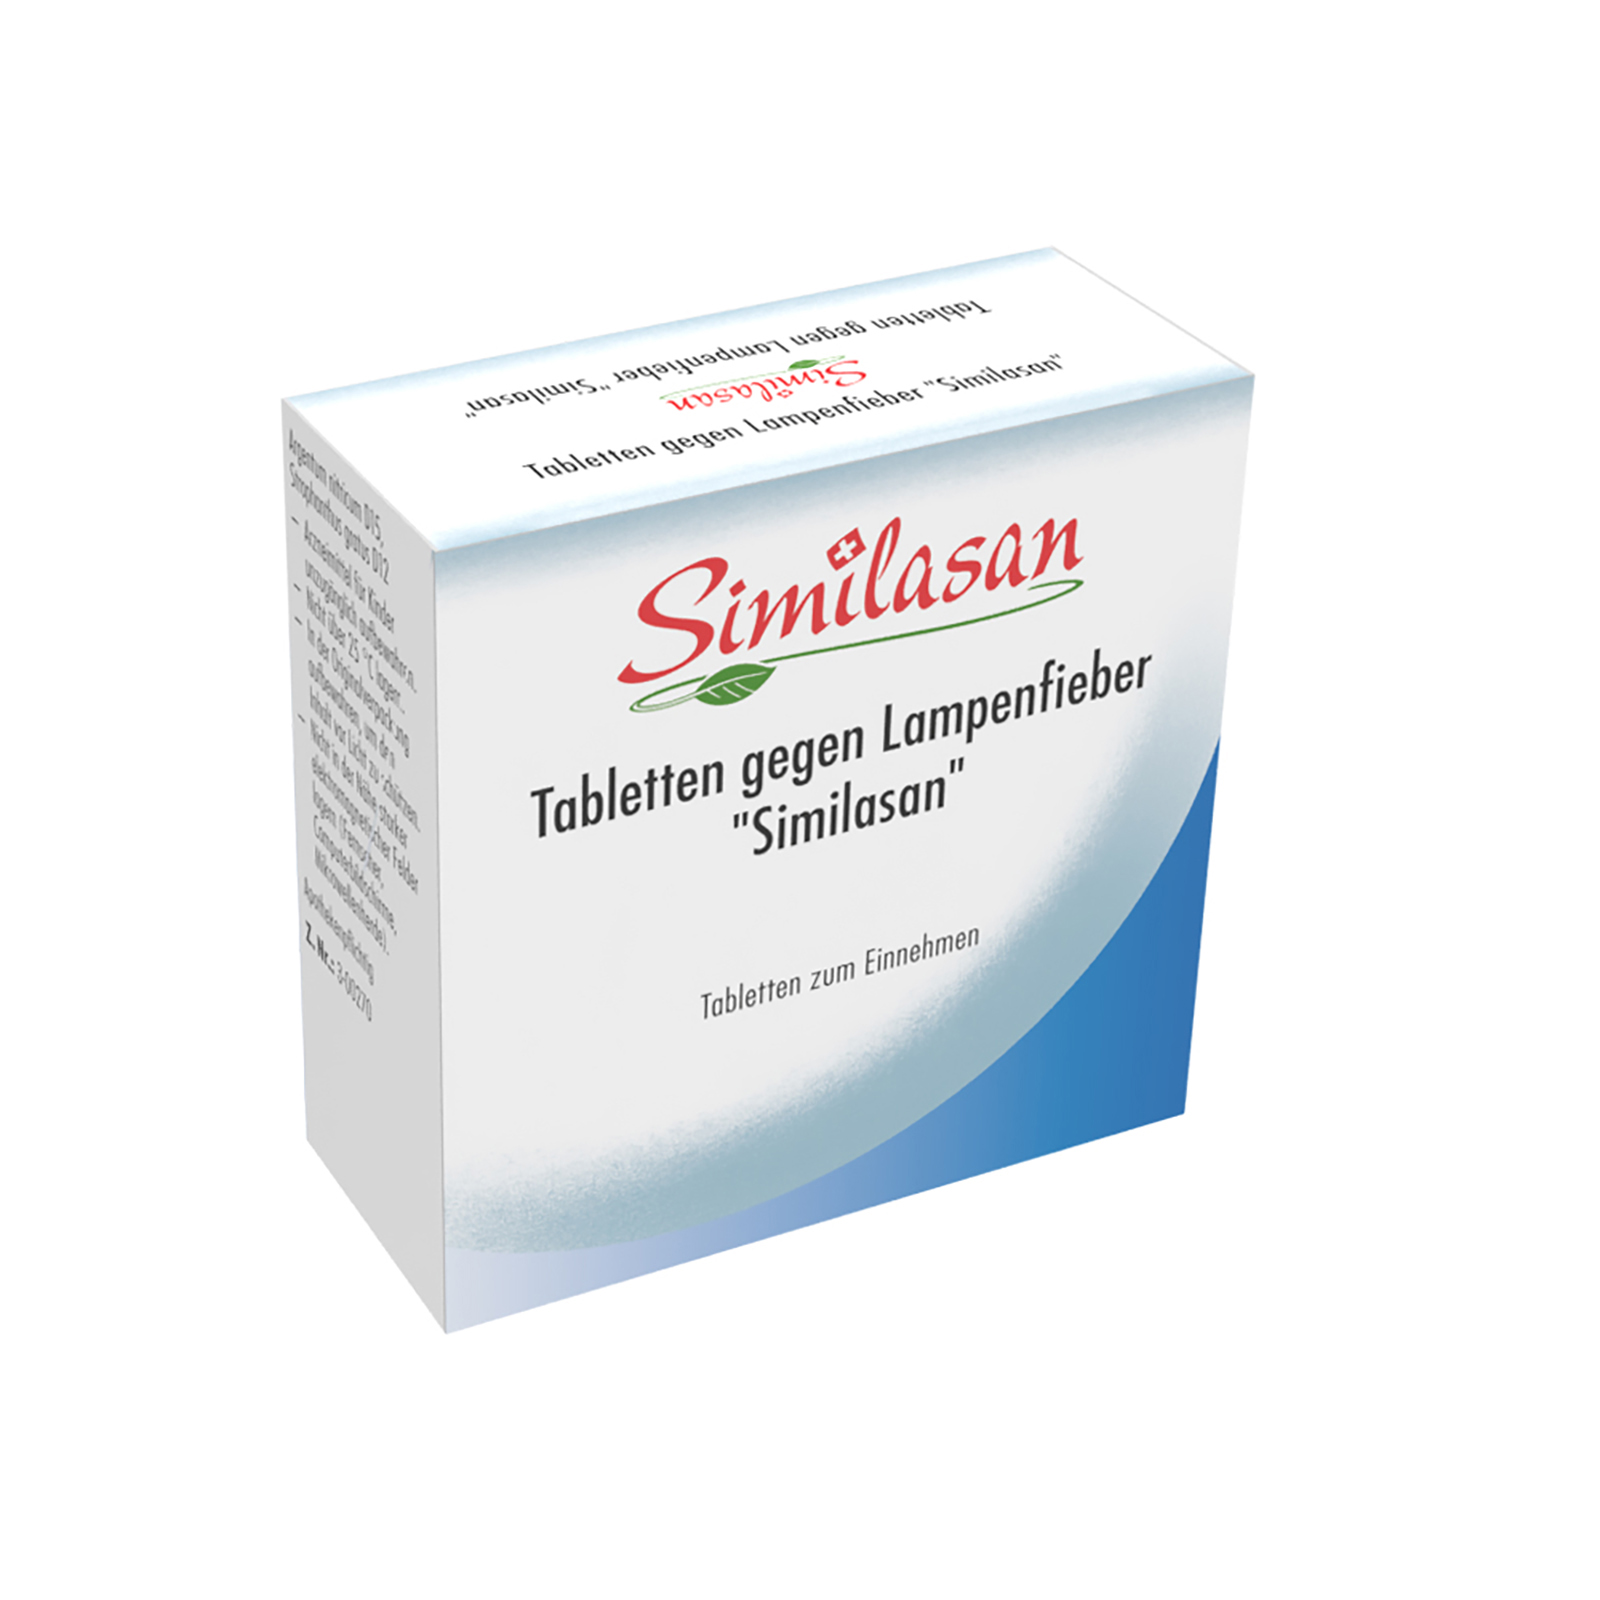 Tabletten gegen Lampenfieber "Similasan"